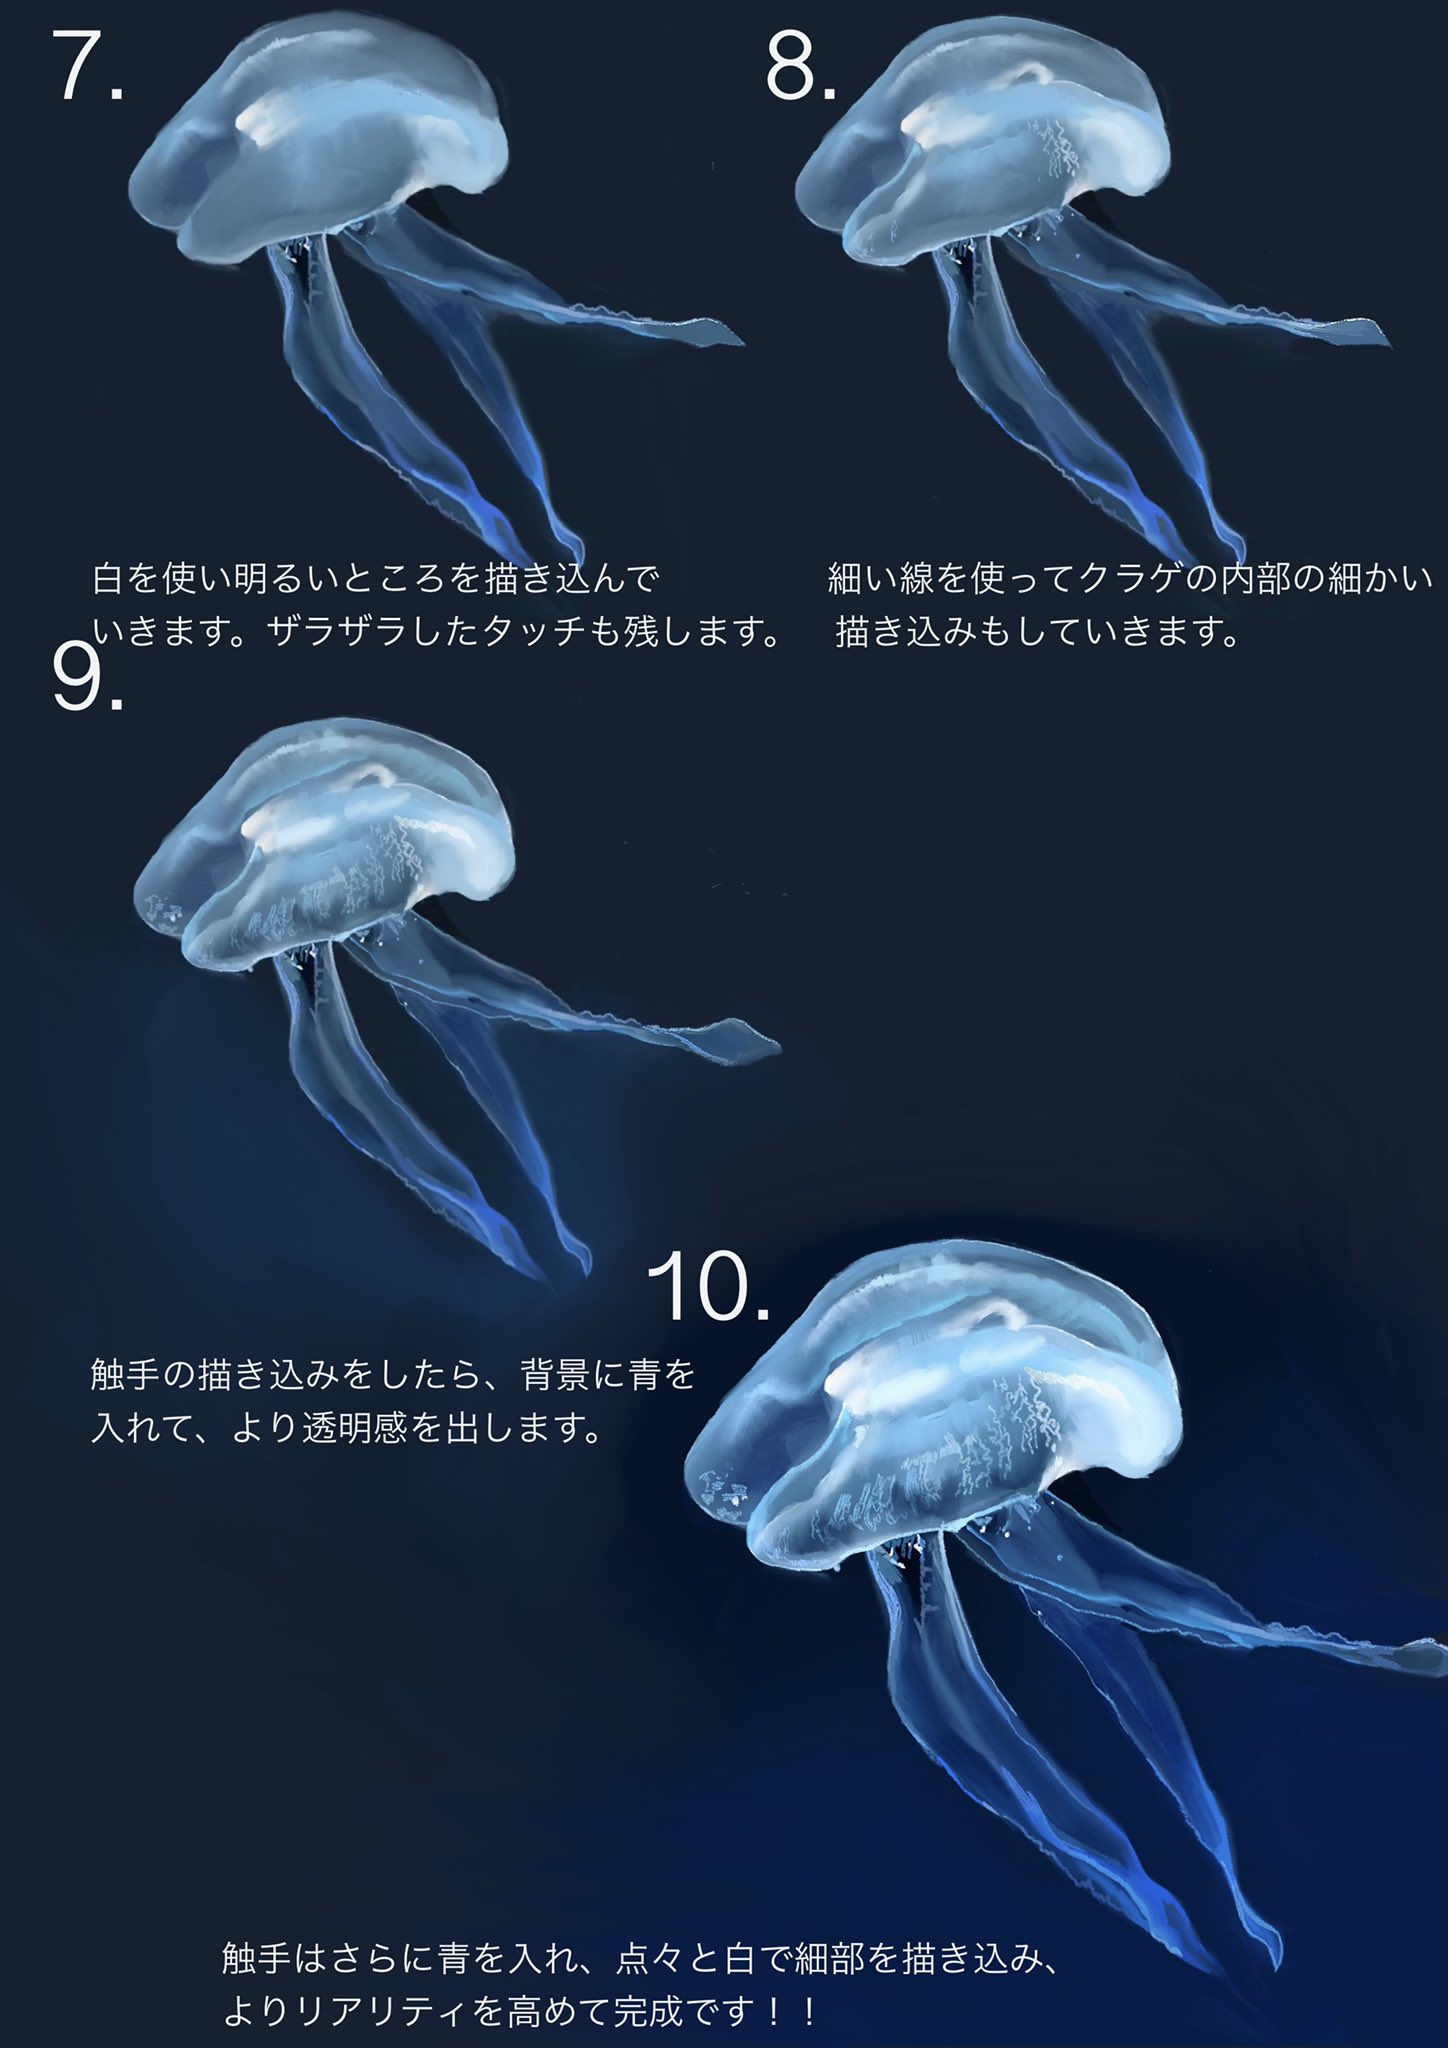 𝓨𝓪𝓼 青ヰ 鱗 グループ展開催中 クラゲの描き方 T Co Xvusccpheu Twitter